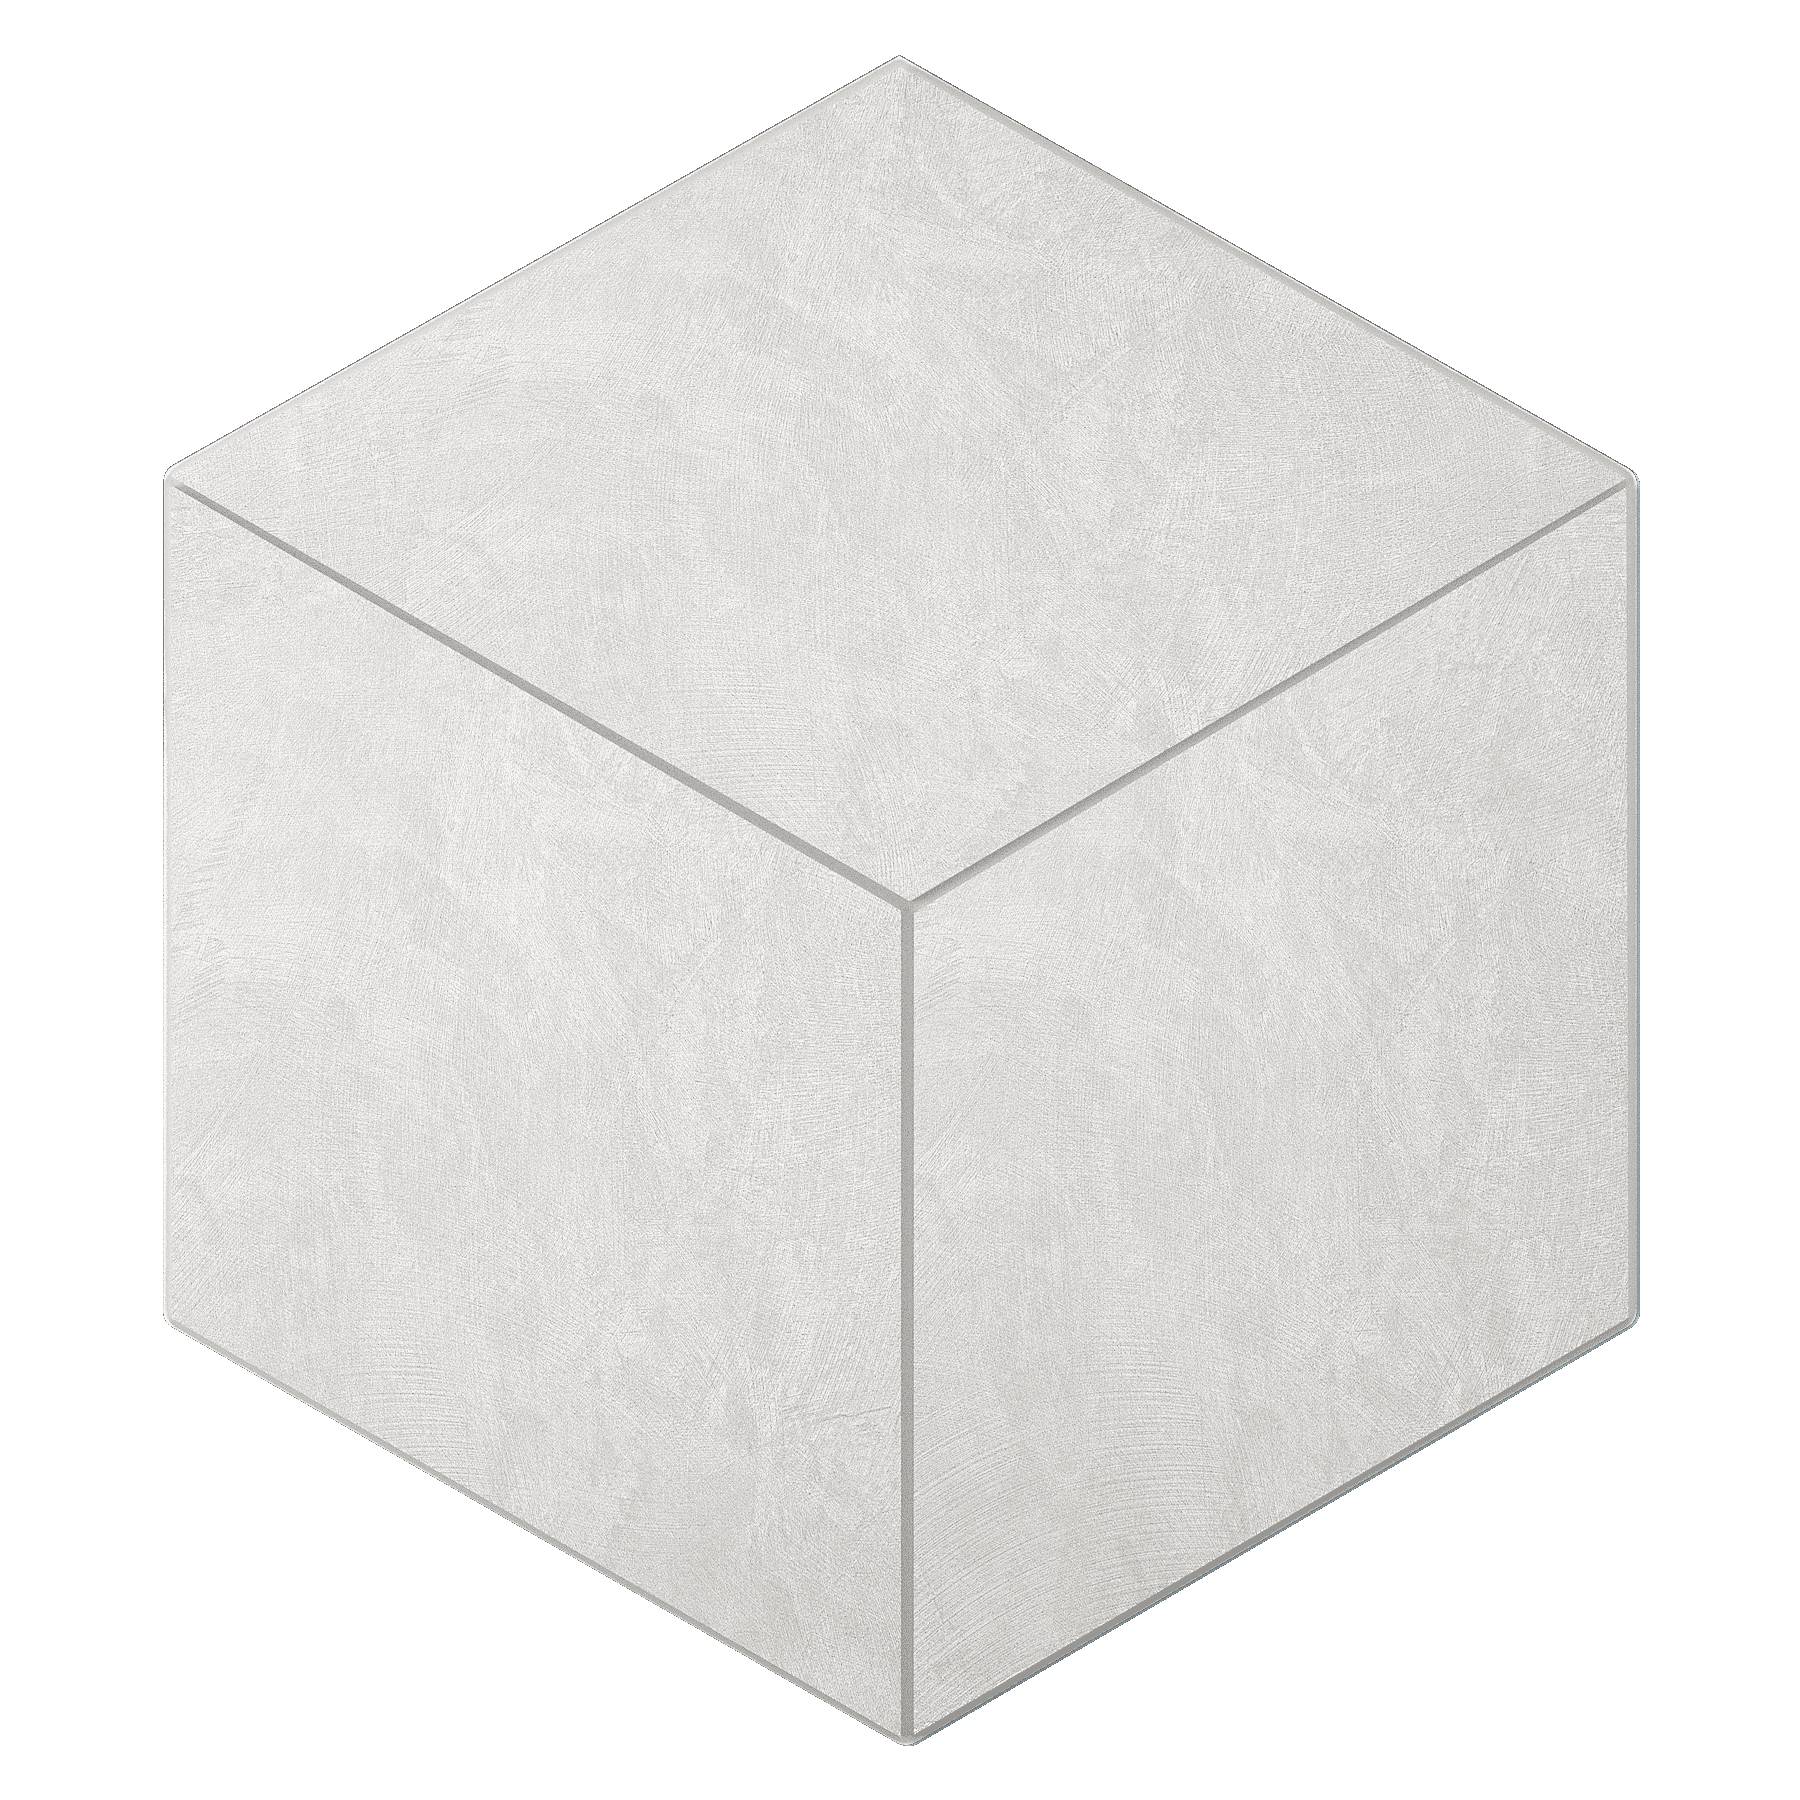 Мозаика Ametis Spectrum Milky White SR00 Cube Непол. 29x25 мозаика ametis spectrum salmon sr05 cube непол 29x25